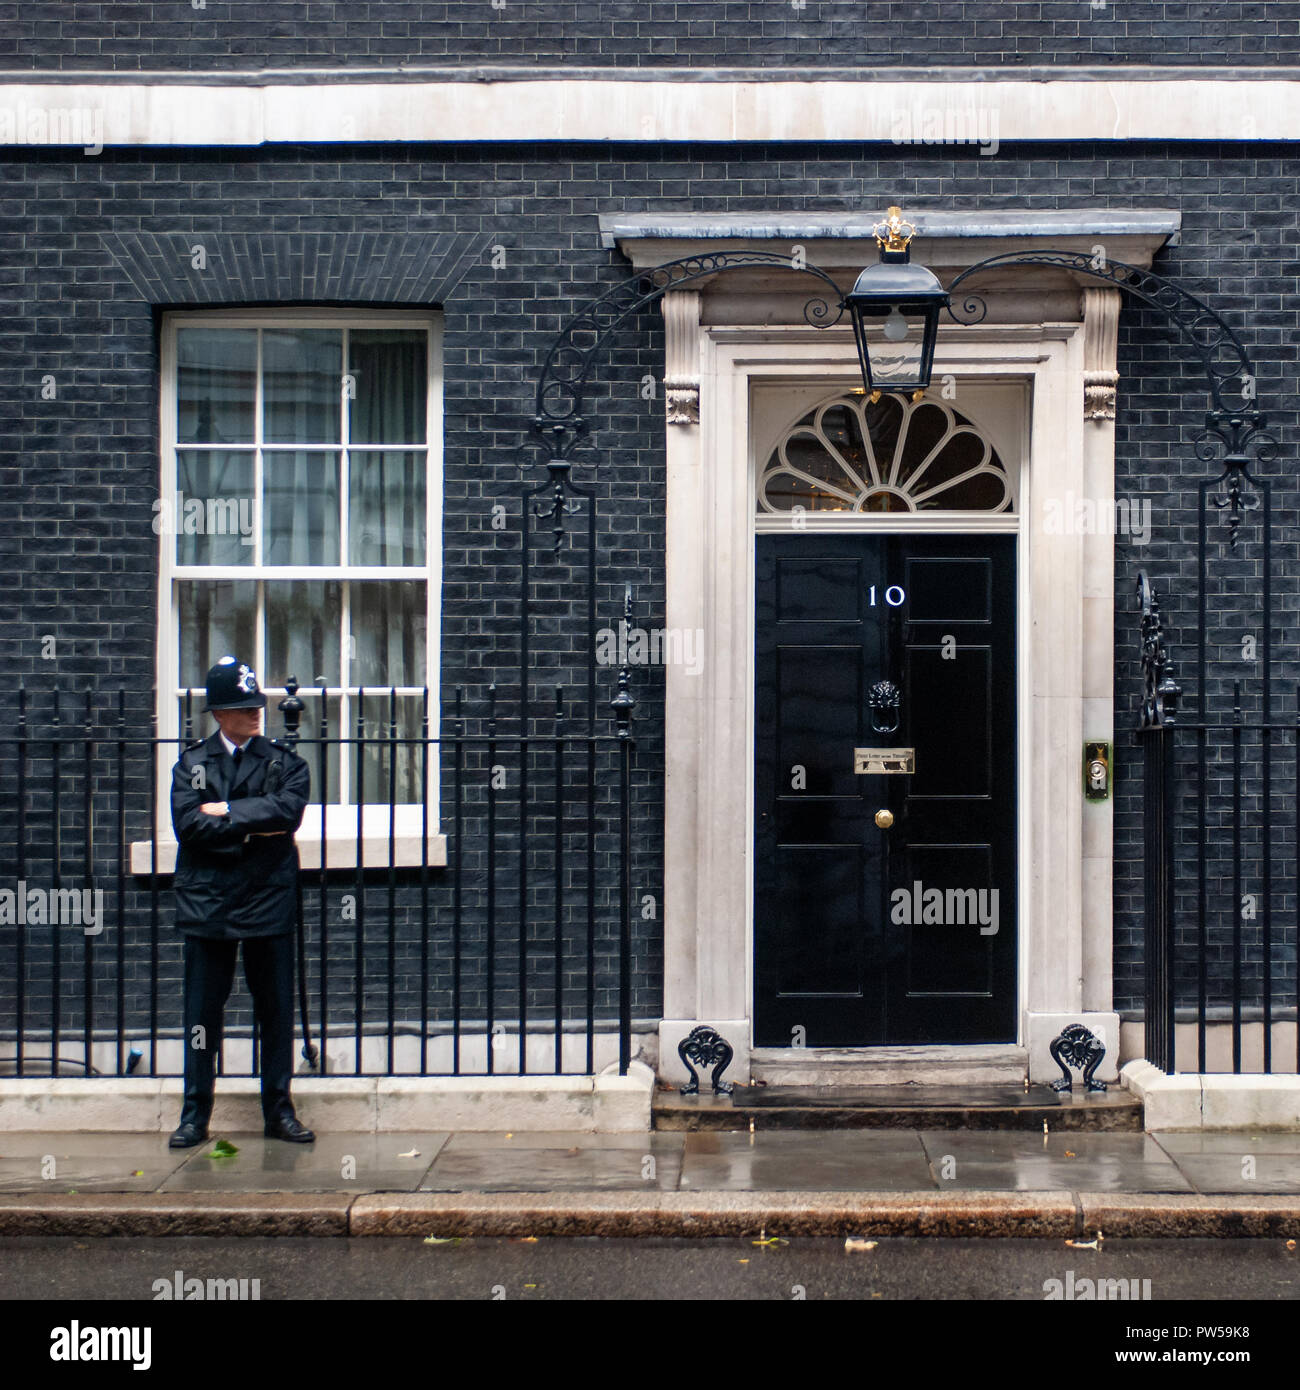 Londres, Reino Unido - 16 SEP: imagen cuadrada de un oficial de policía que custodiaban la puerta de entrada de 10 de Downing Street en Londres el 16 de septiembre, 2013 Foto de stock